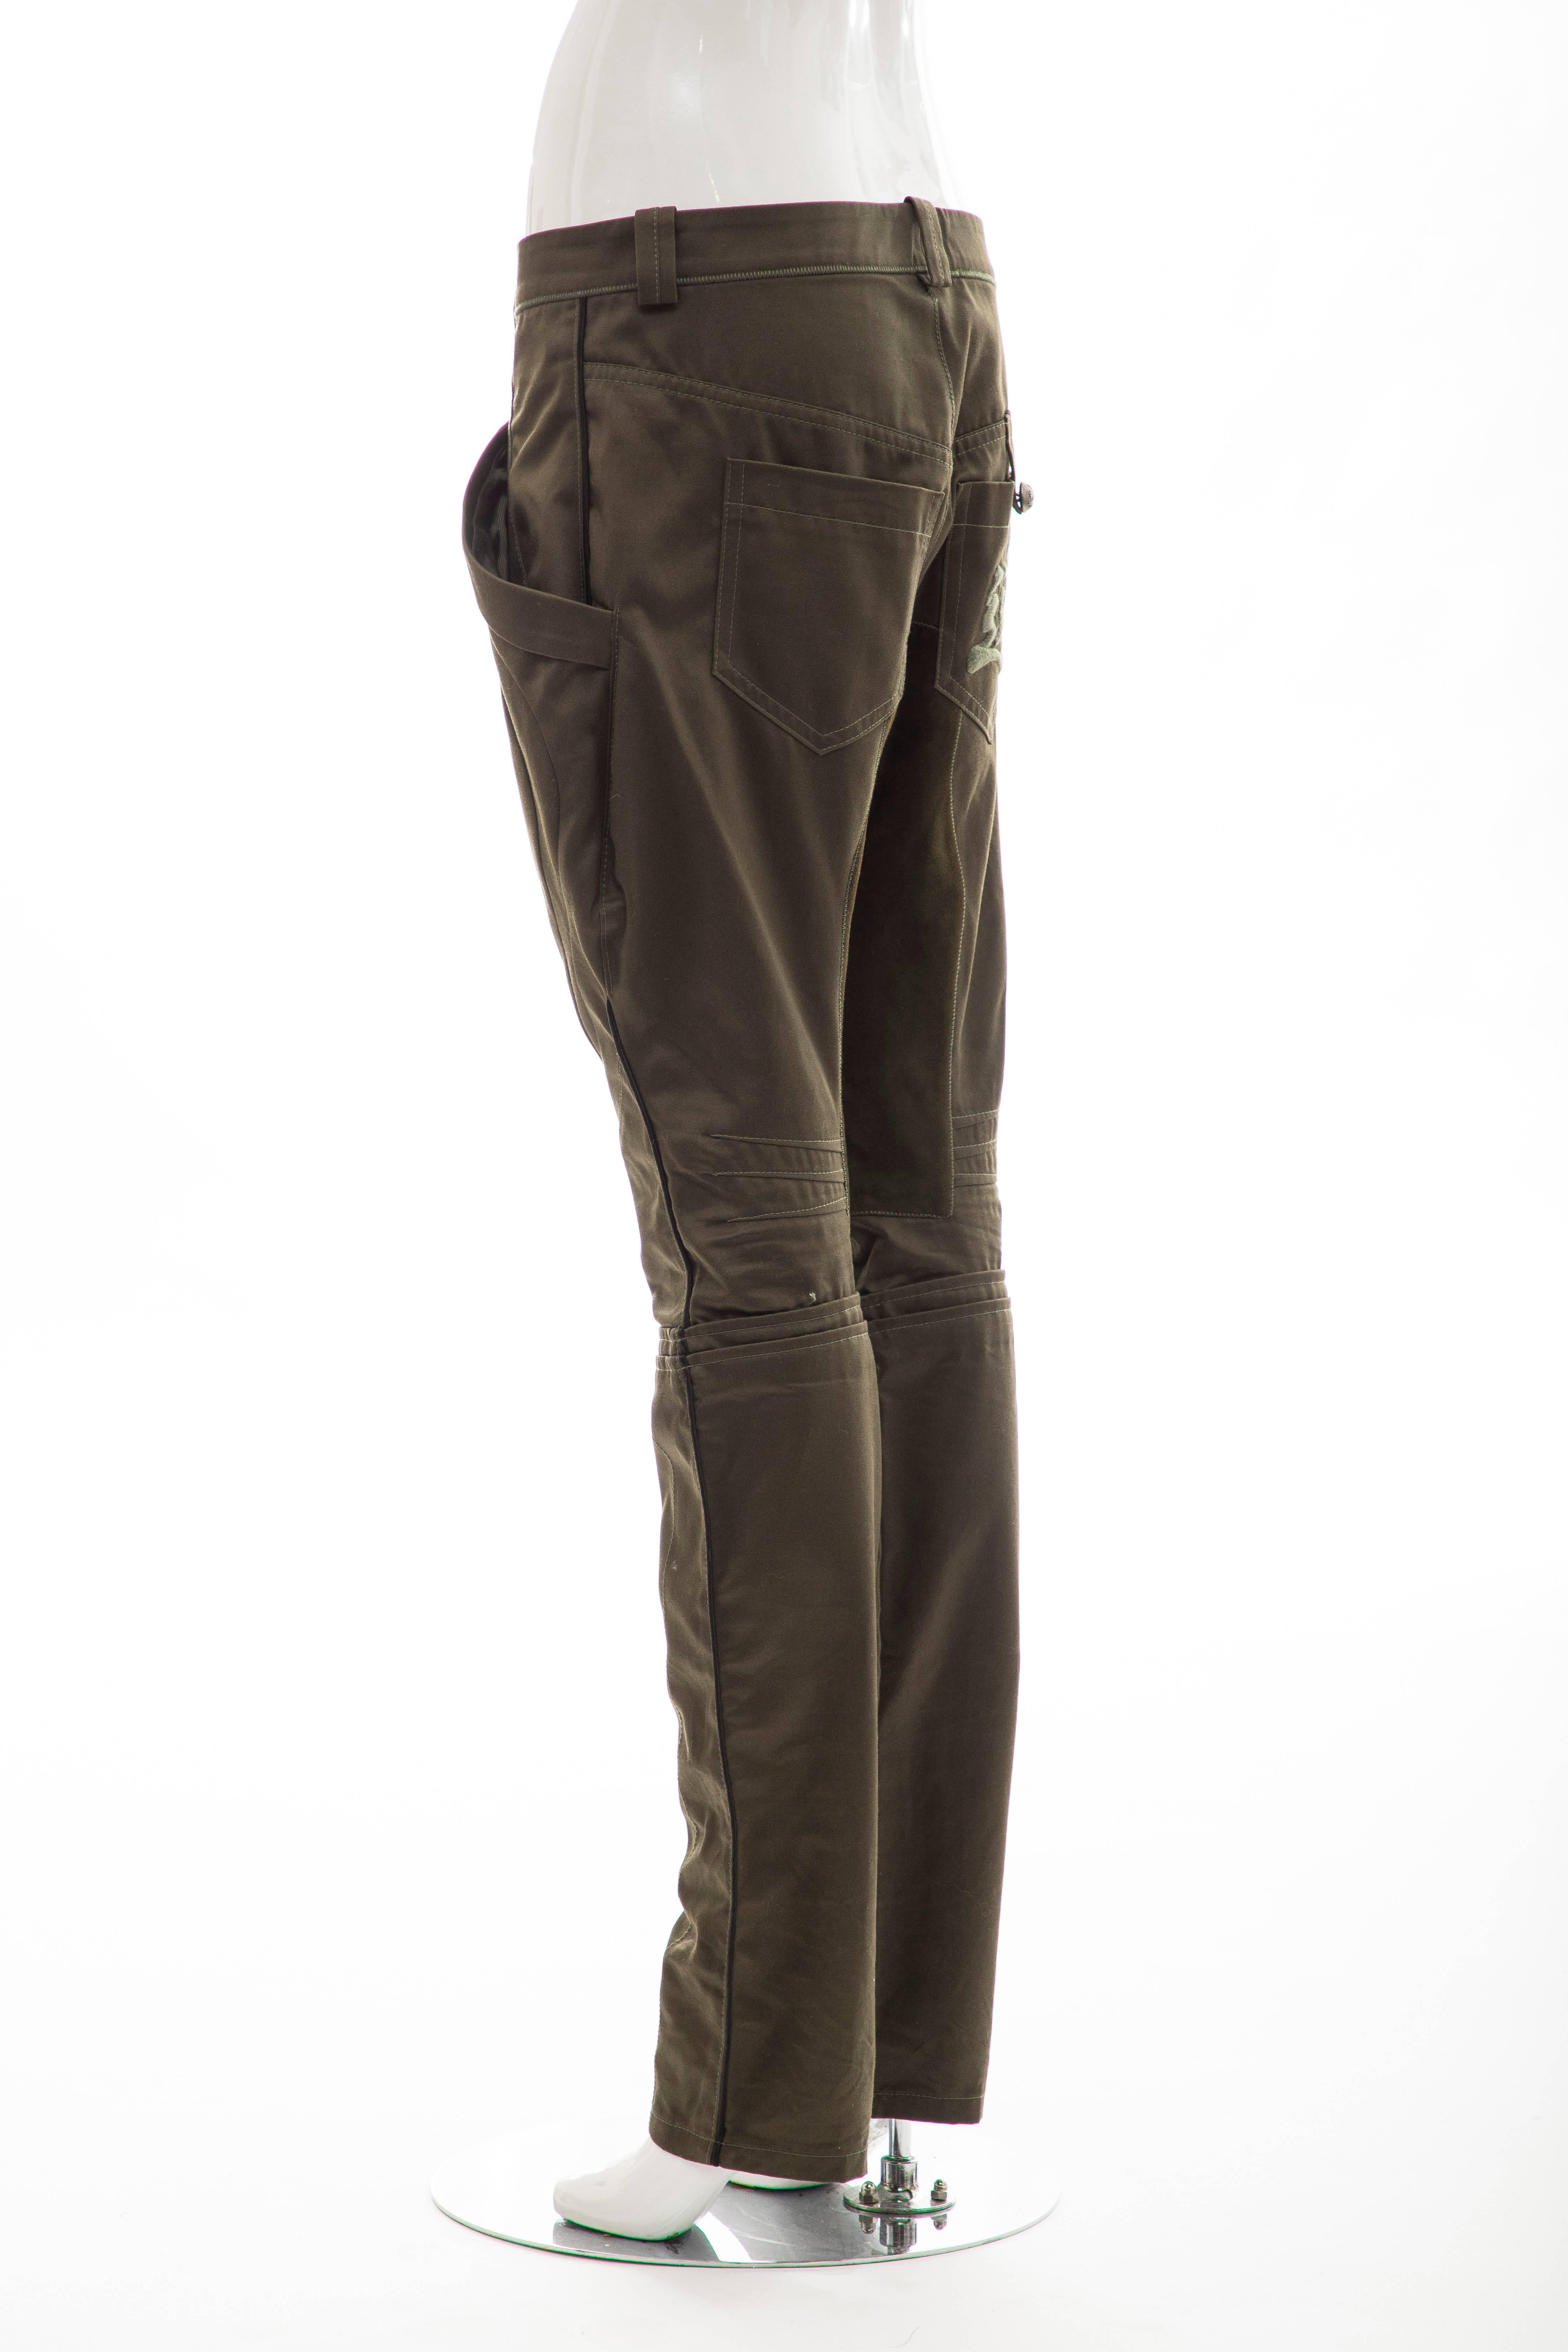 Women's Nicolas Ghesquière for Balenciaga Runway Cotton Suede Pants, Fall 2007 For Sale